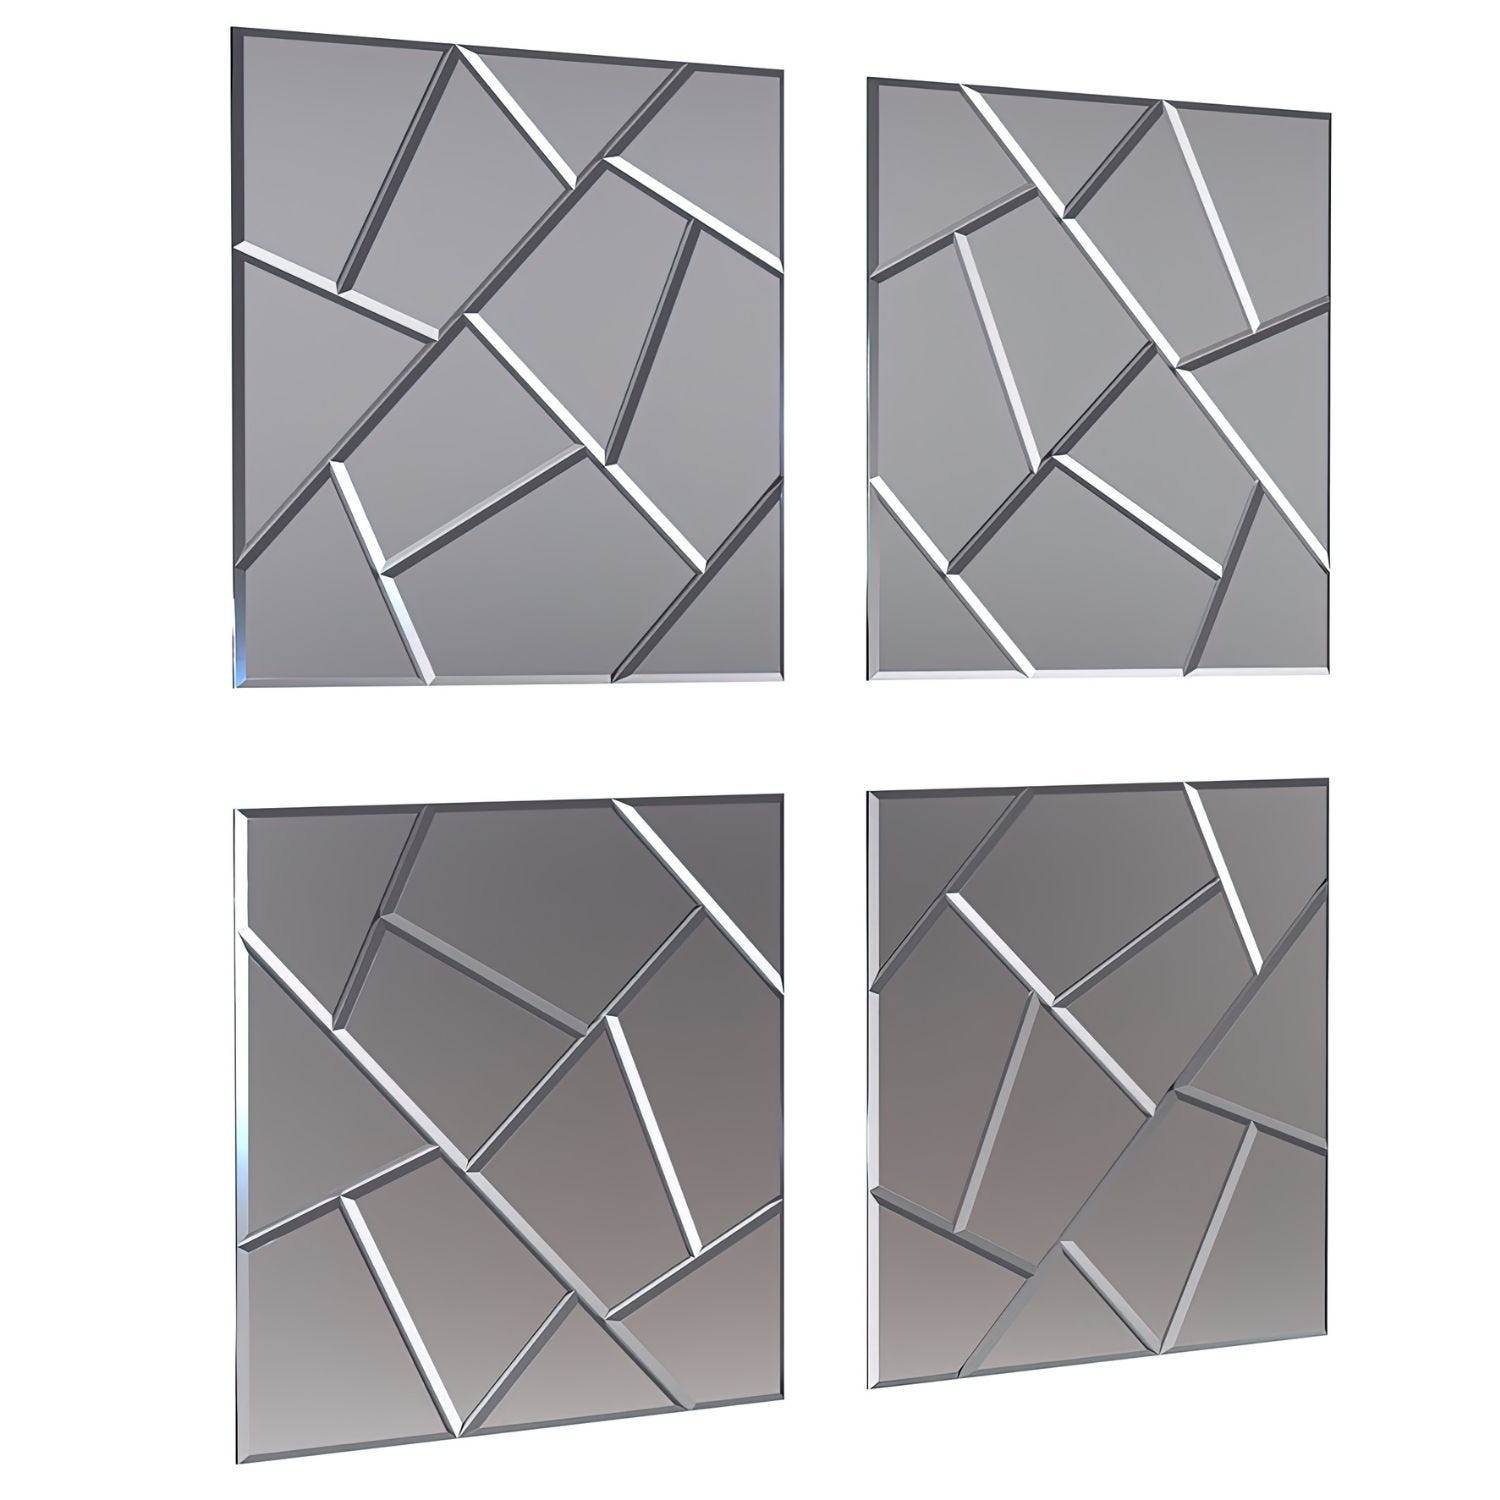 DekoArte - Espejos Decorativos de Pared 30x30cm 4 piezas AZULEJO EROS - Espejo  Adhesivo de Cristal Moderno y Elegante.